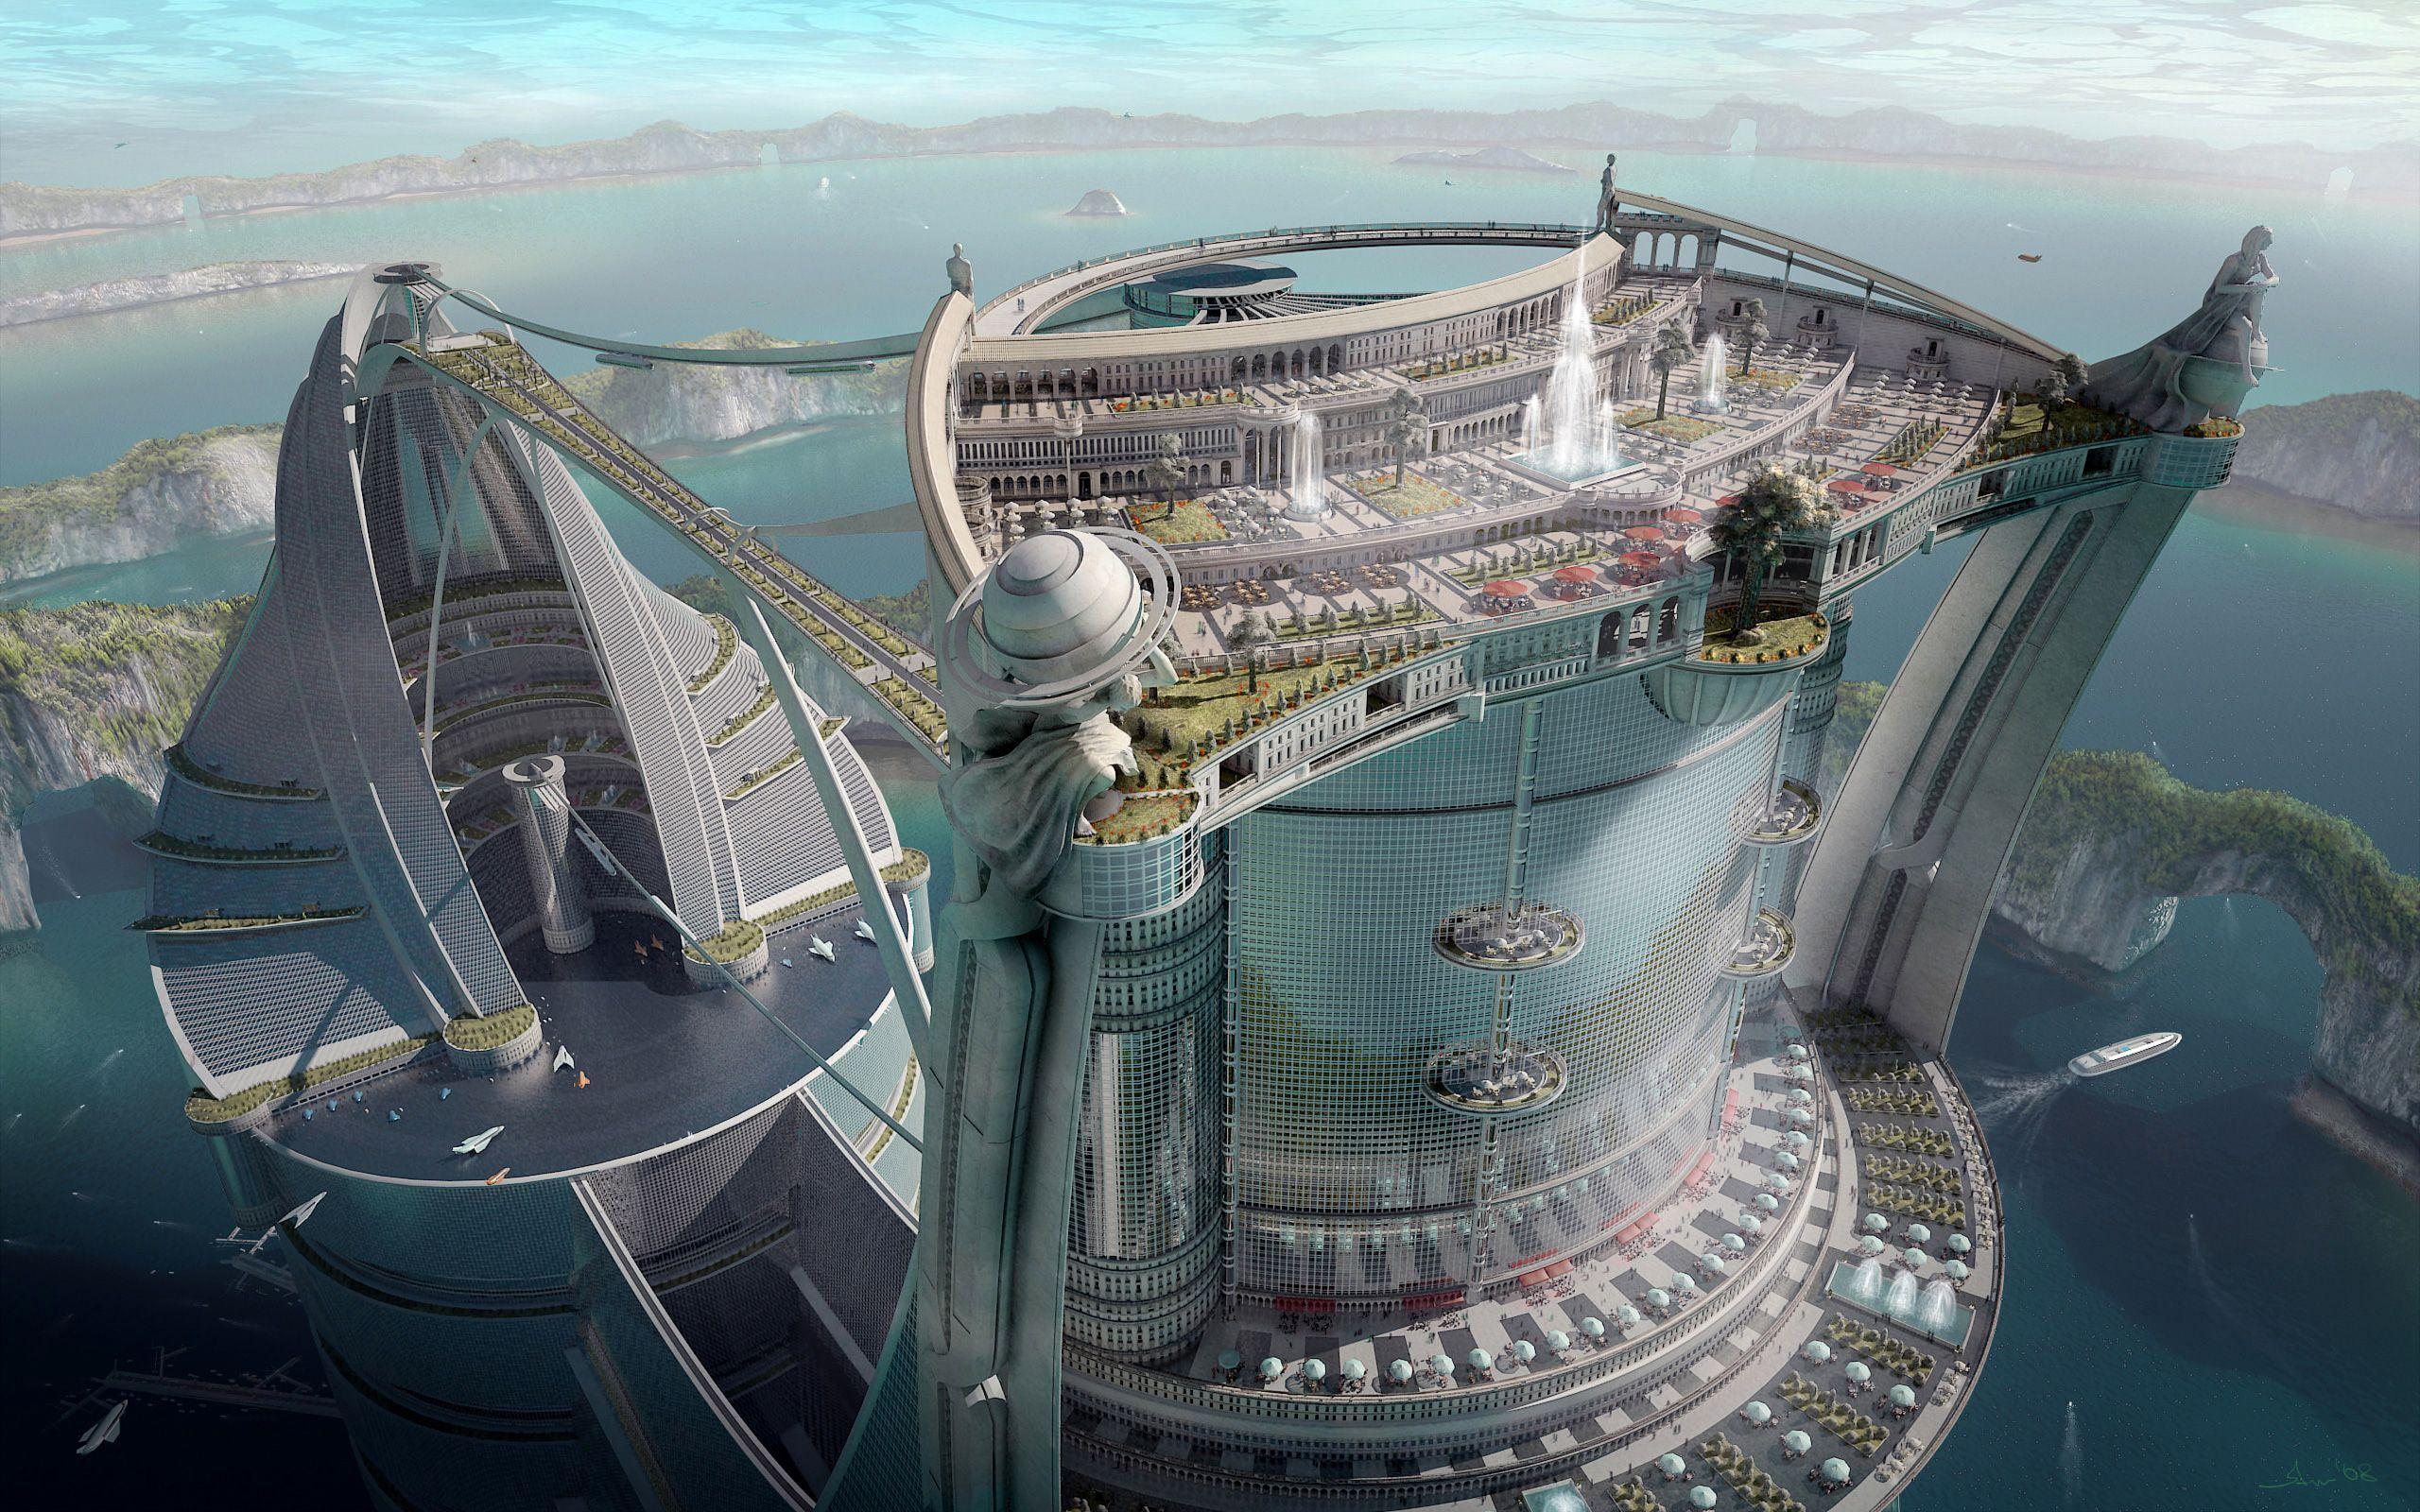 2560x1600 Khoa học viễn tưởng - Thành phố - Tương lai - Nhà xây dựng - Kiến trúc - Hồ - Tàu